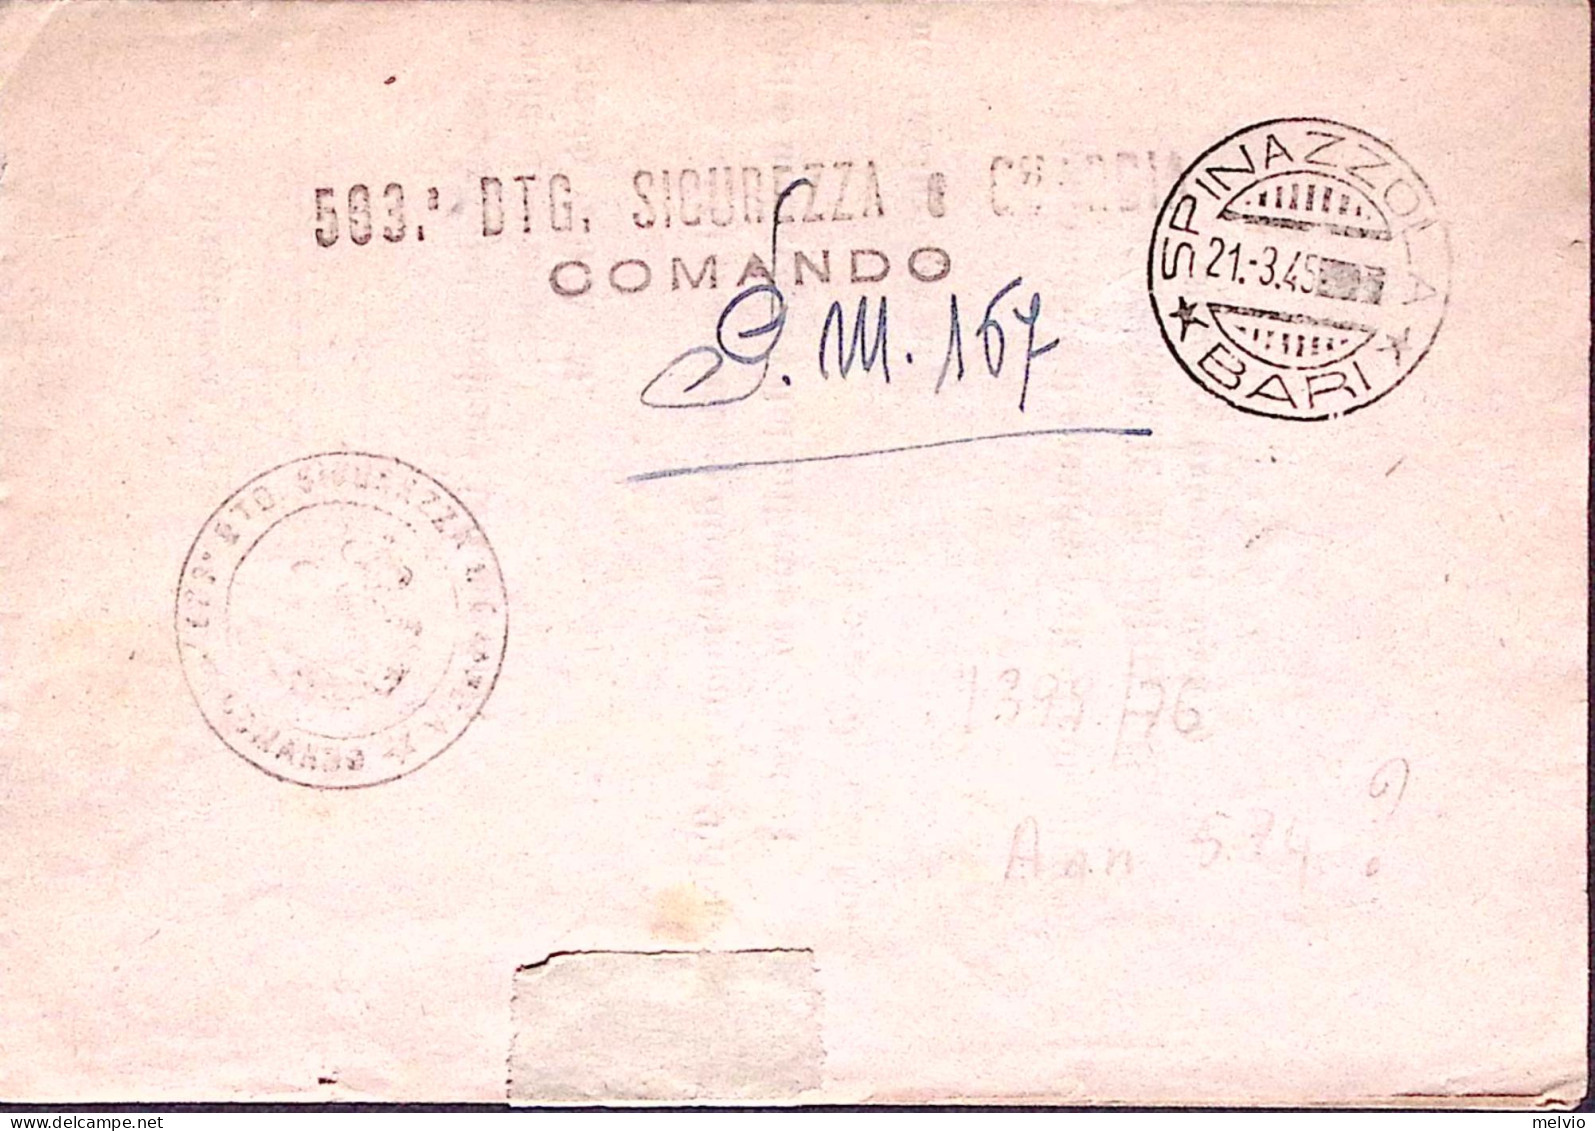 1945-Posta Militare/n.167 C.2 (18.3) Su Piego Con Informazioni Su Disertore - Guerra 1939-45